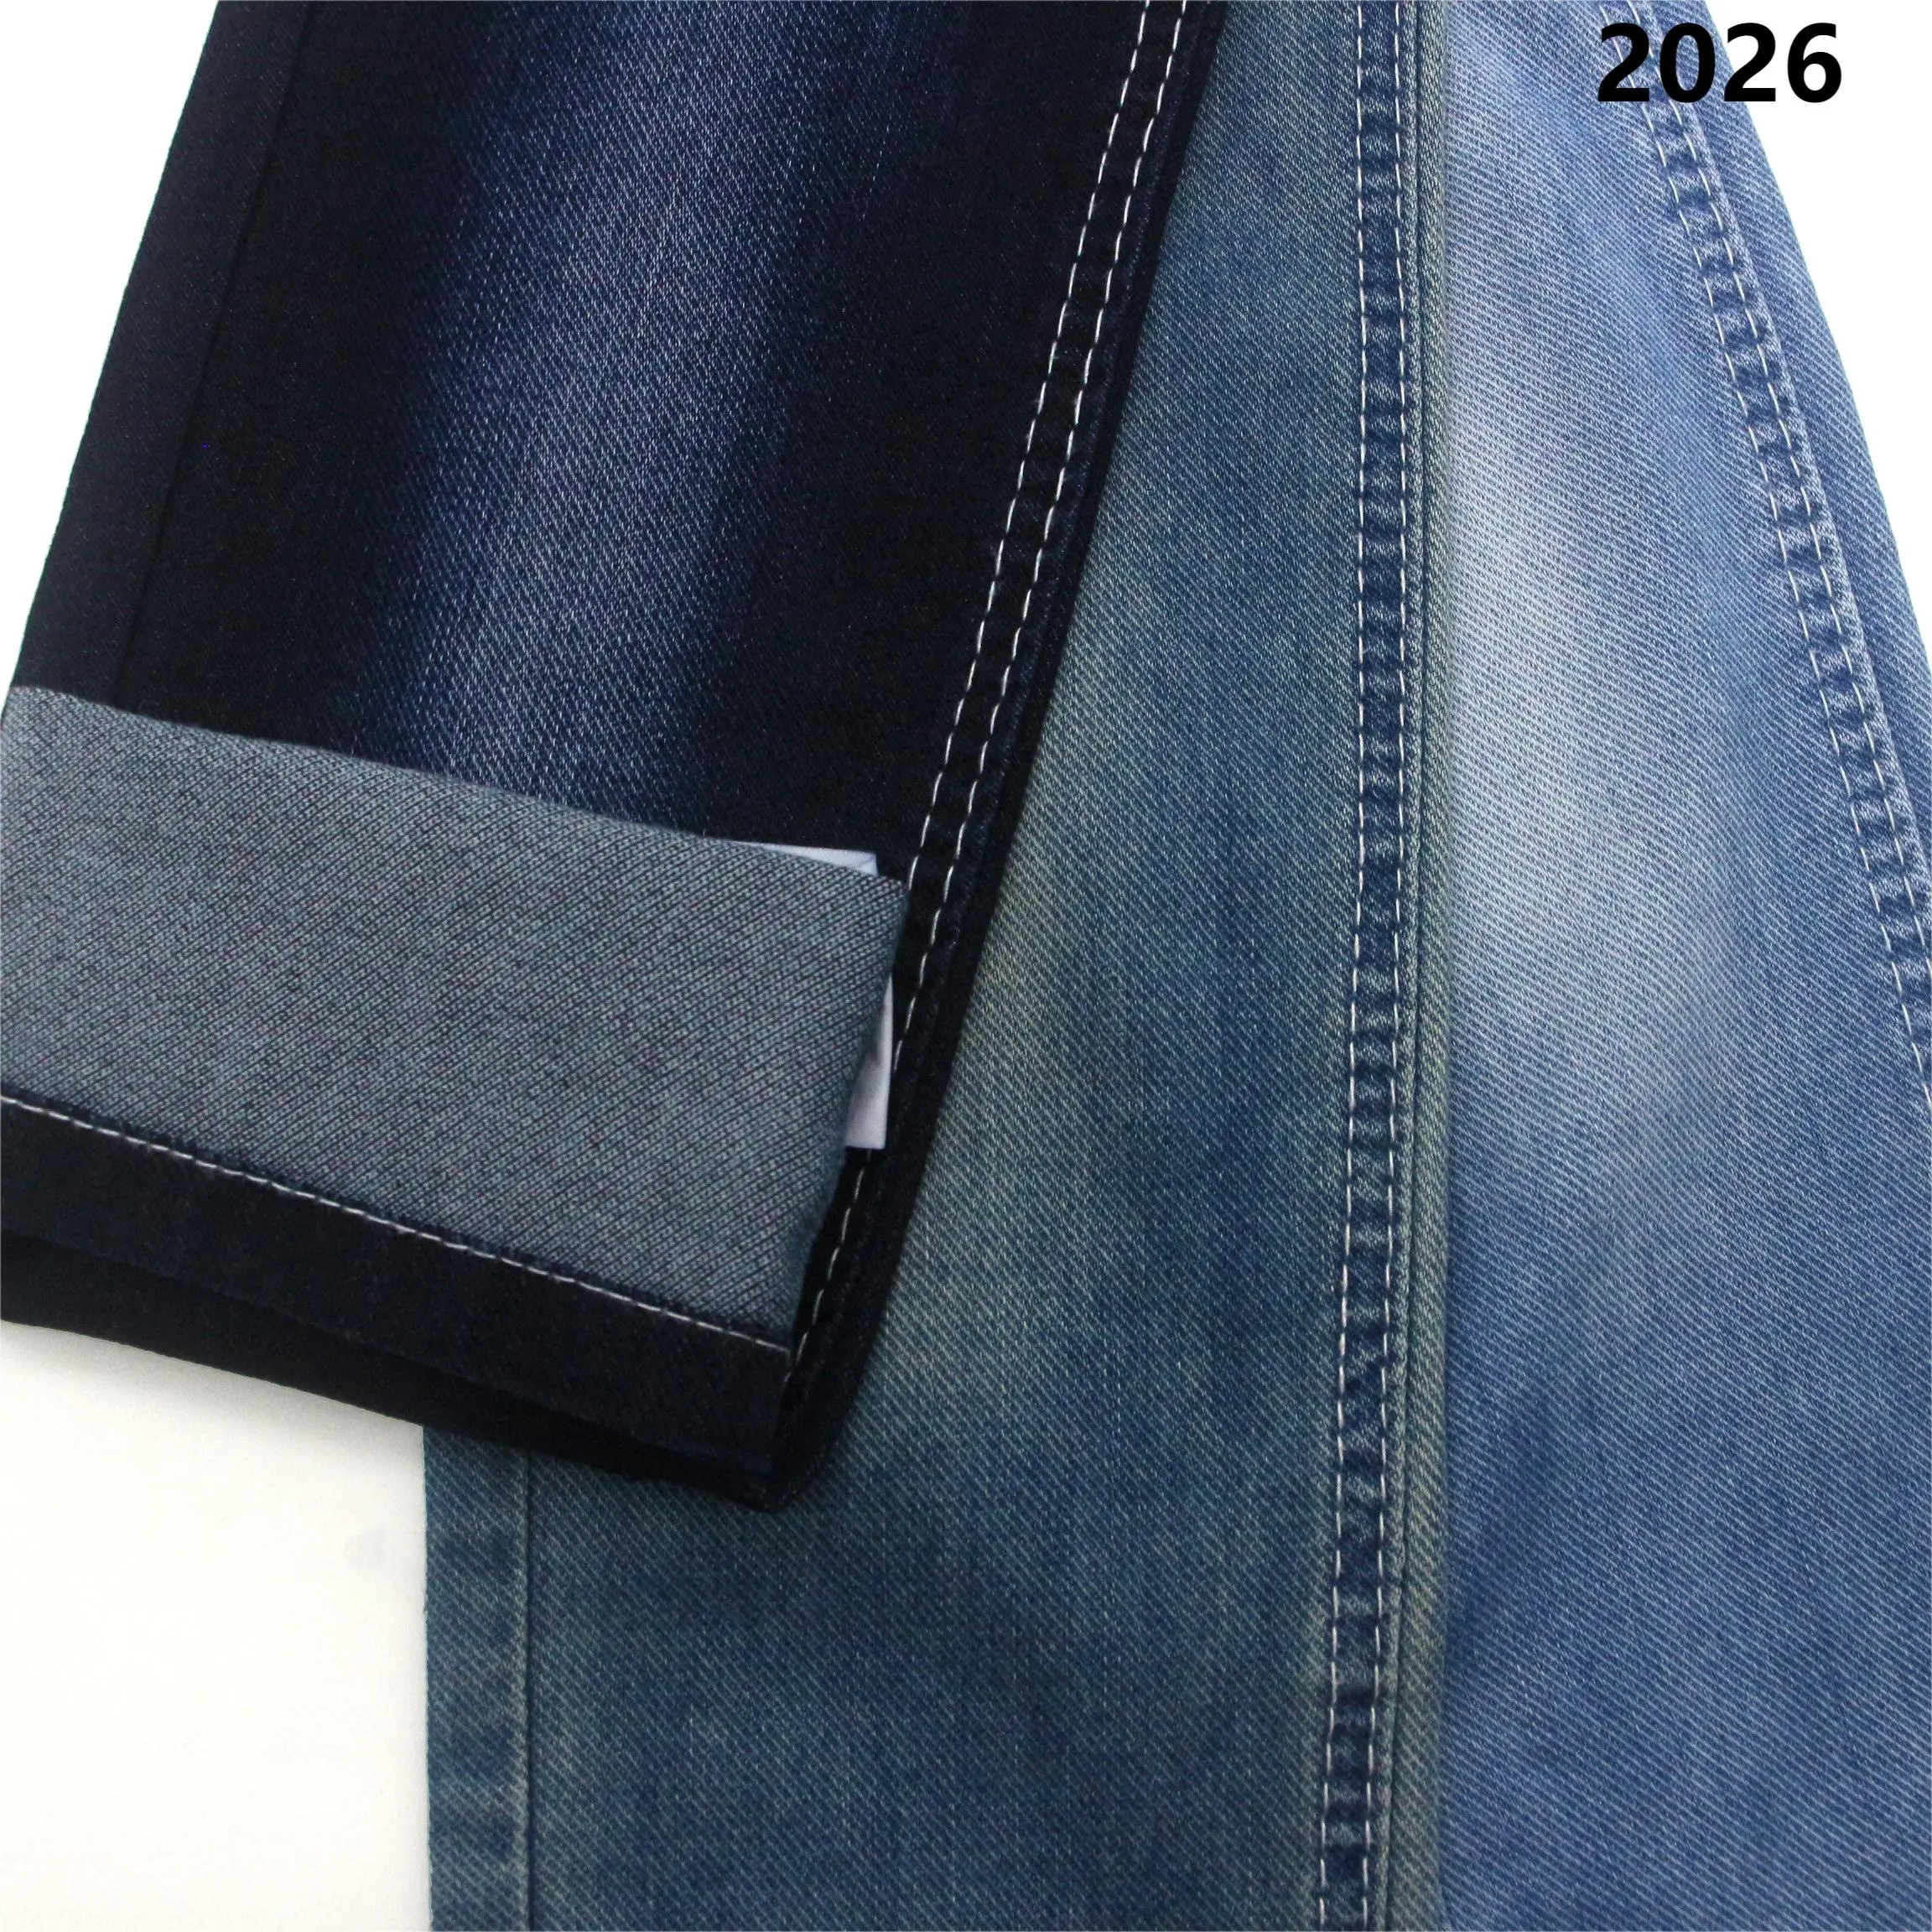 Tersedia tangan kanan kain denim spandeks katun kepar untuk jeans kain melar